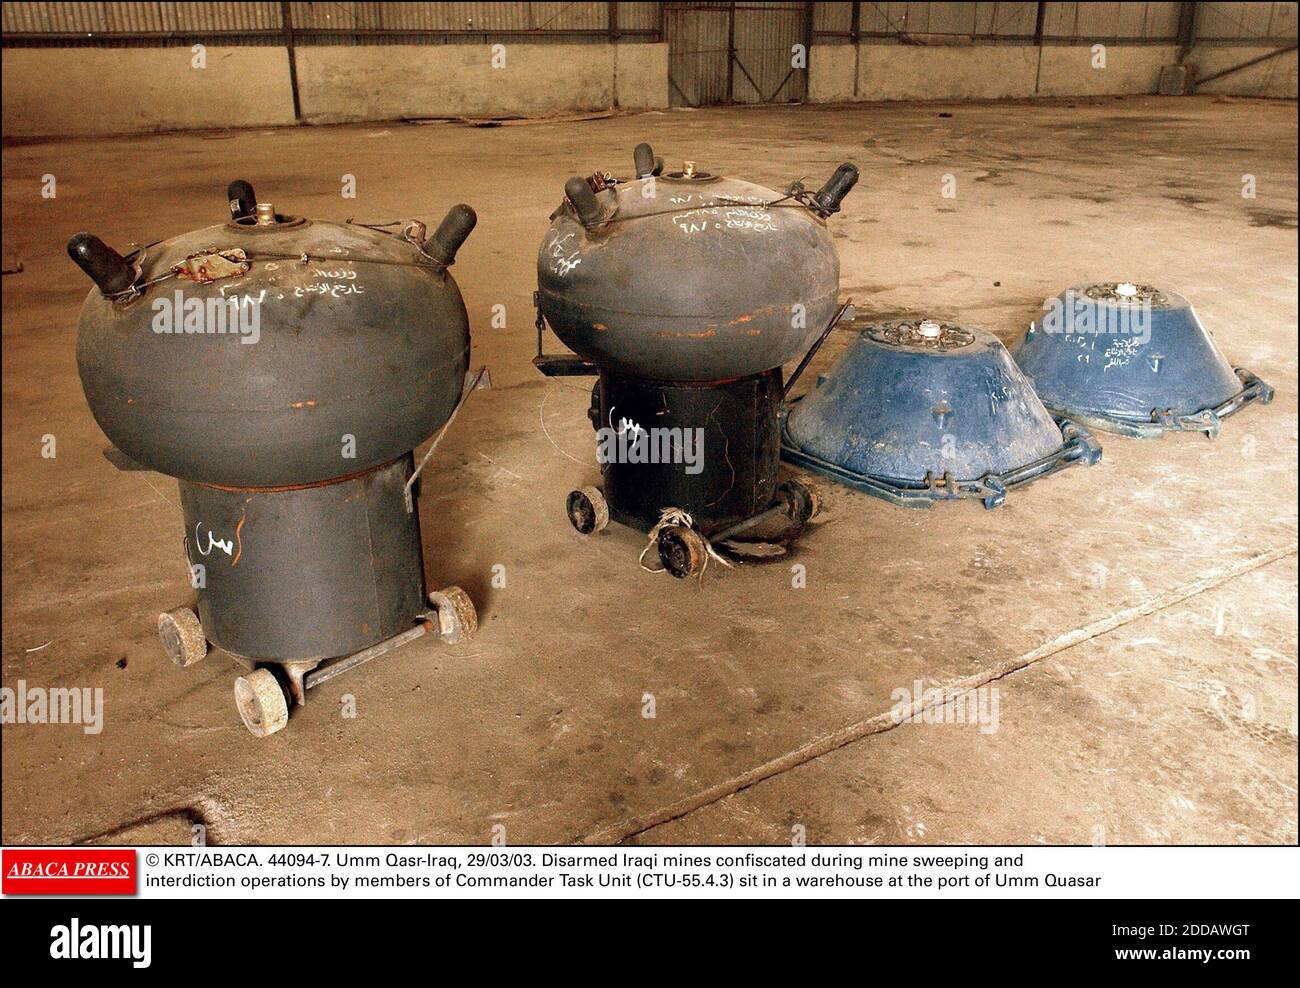 PAS DE FILM, PAS DE VIDÉO, PAS DE TV, PAS DE DOCUMENTAIRE - © KRT/ABACA. 44094-7. Umm Qasr-Iraq, 29/03/03. Les mines iraquiennes désarmées confisquées au cours des opérations de balayage et d'interdiction des mines par des membres du Groupe de travail du commandant (CTU-55.4.3) sont statées dans un entrepôt du port d'Umm Quasar Banque D'Images